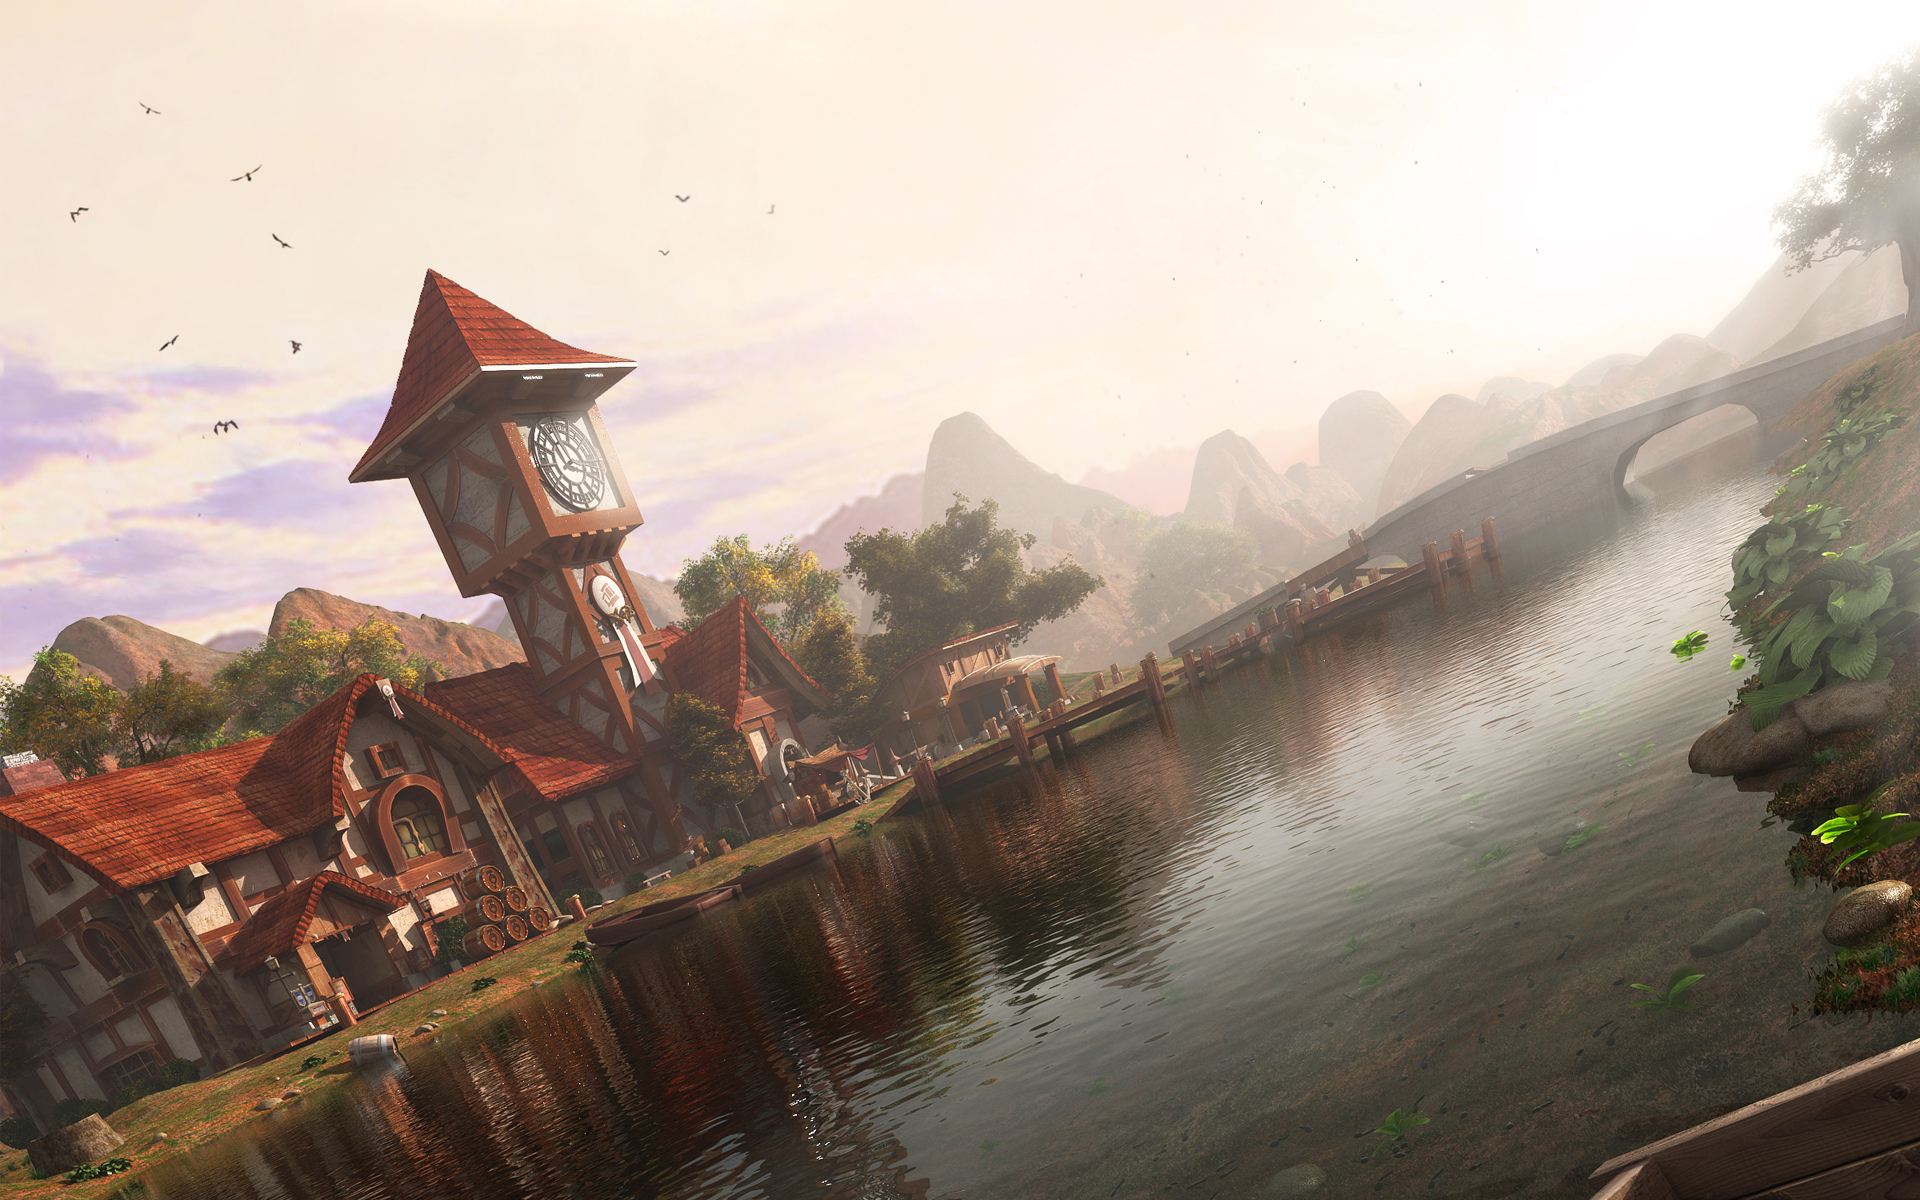 魔兽世界:评选艾泽拉斯五大最美小镇 联盟的就占了三个